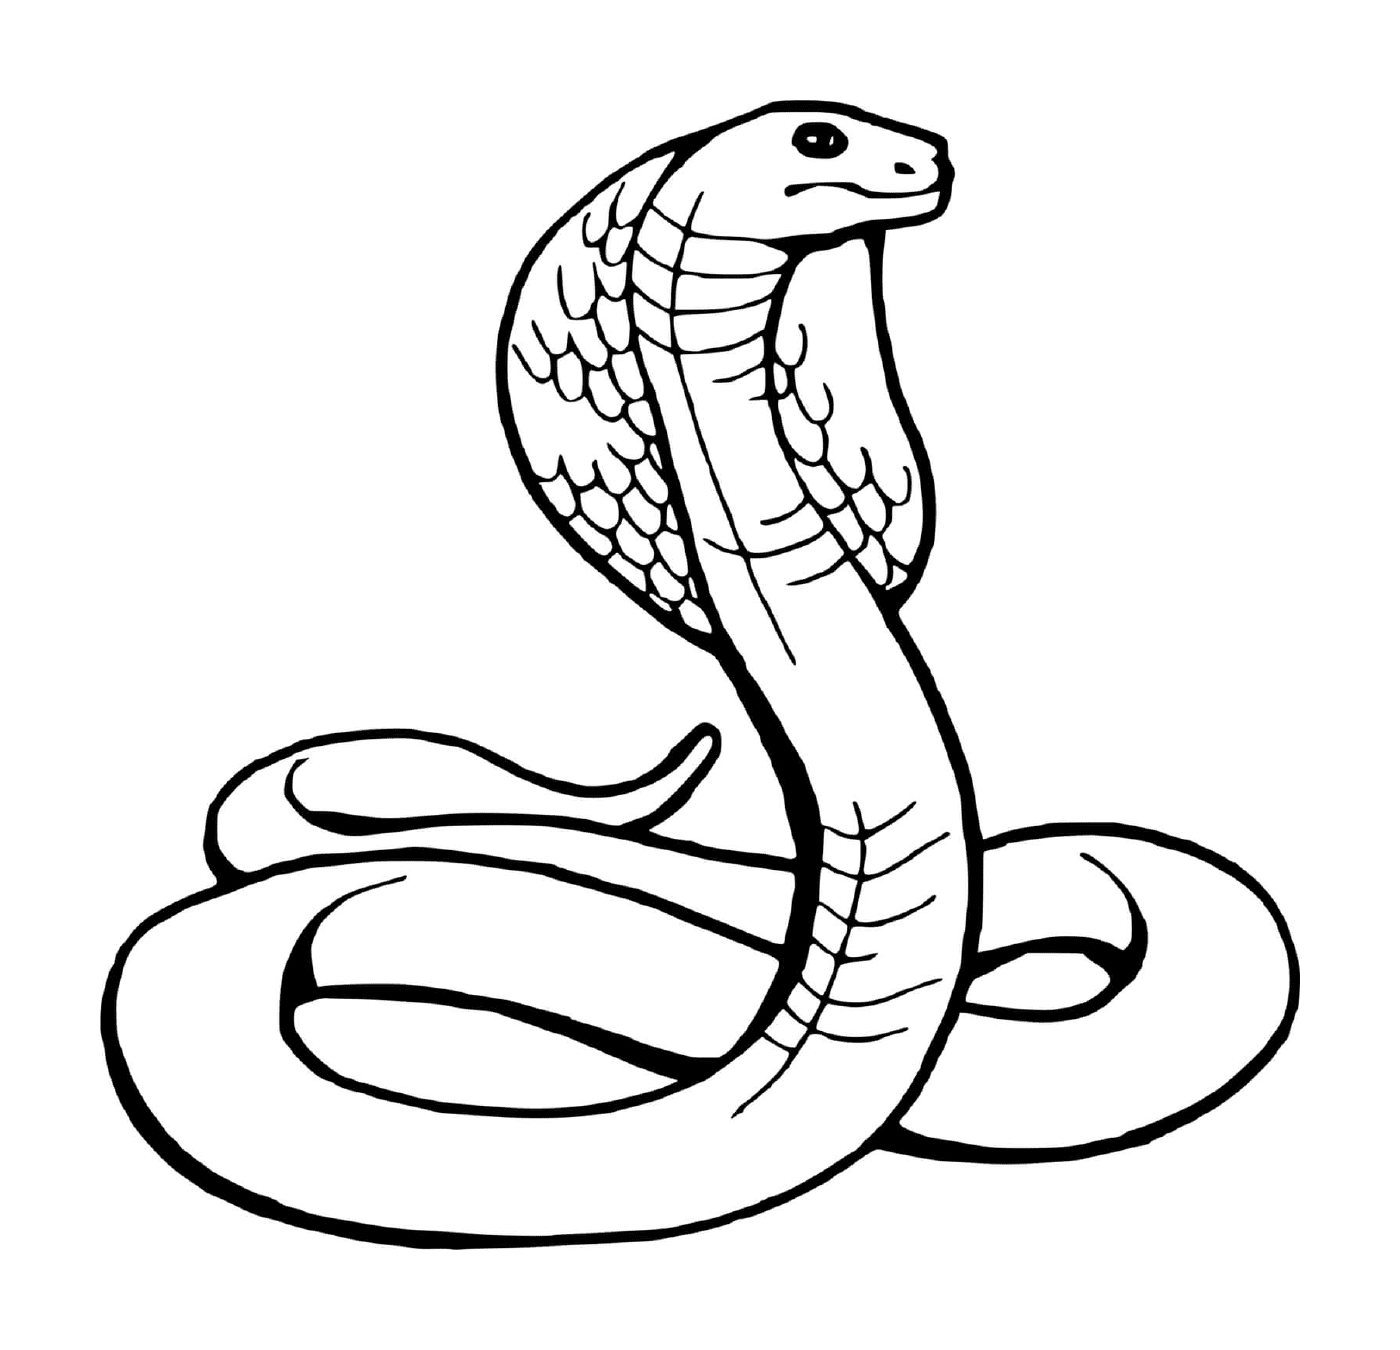  Serpiente, serpiente 